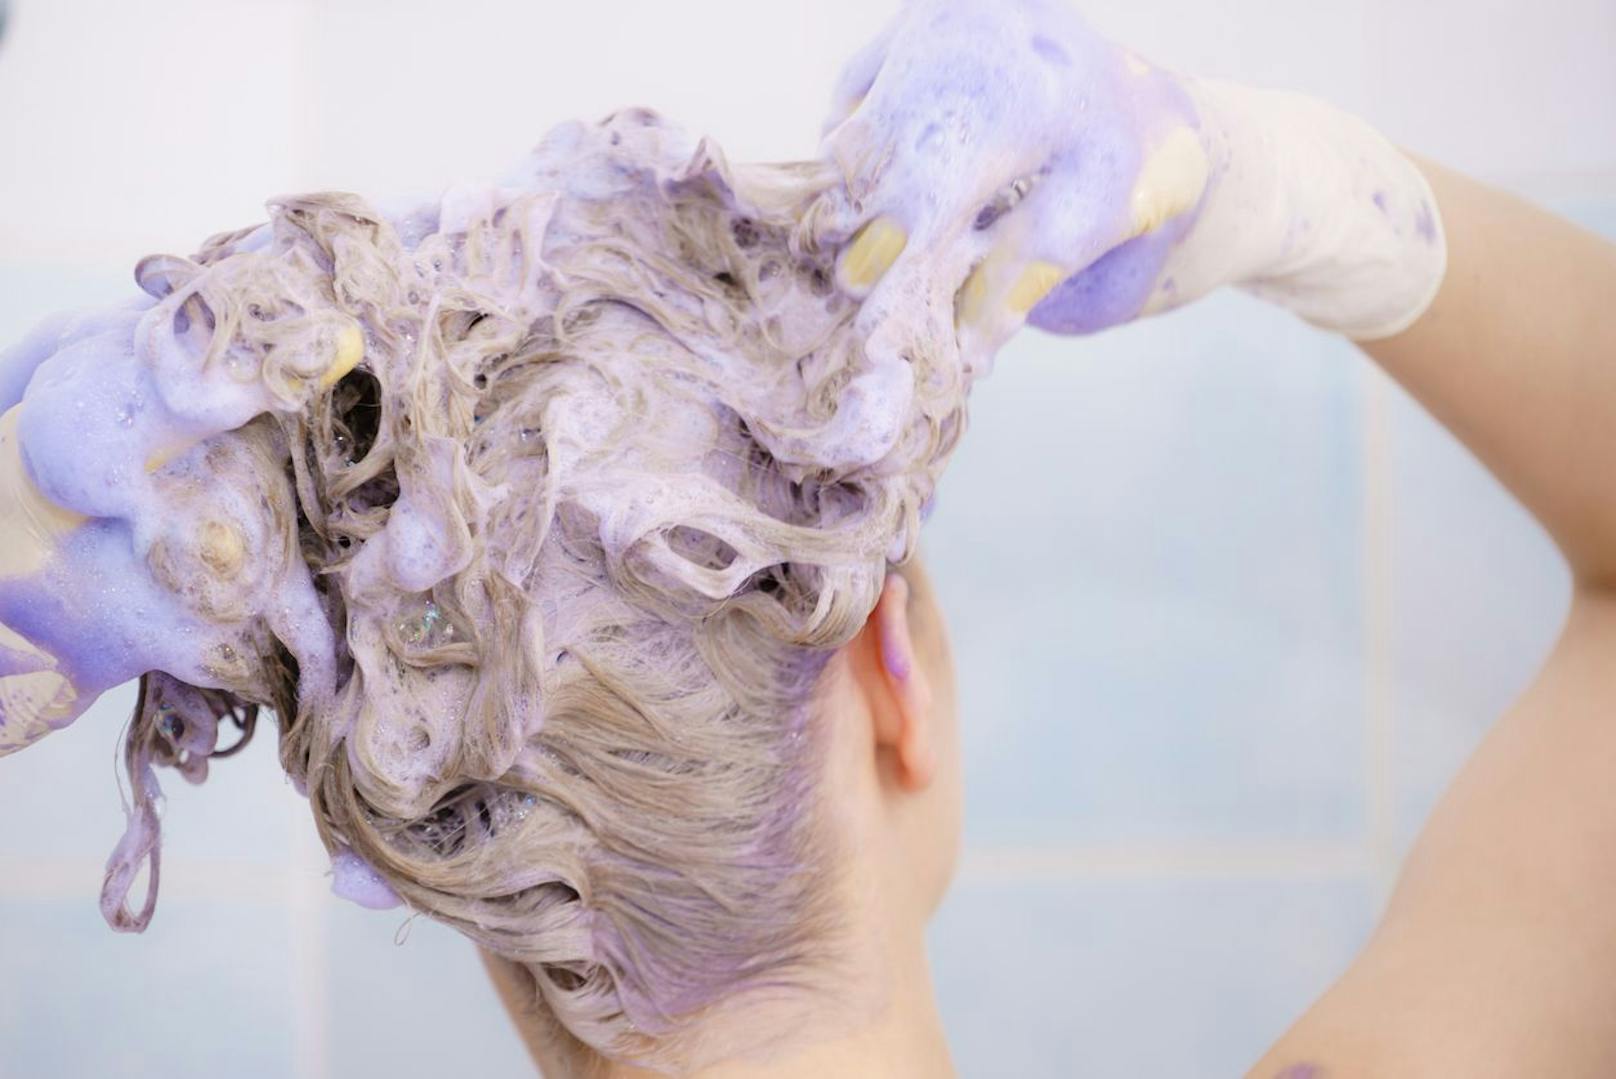 Kaufe dir zusätzlich ein lila-blaues Shampoo, dass einmal wöchentlich verwendet gehört. Dieses verhindert, dass deine Haare gelblich werden.